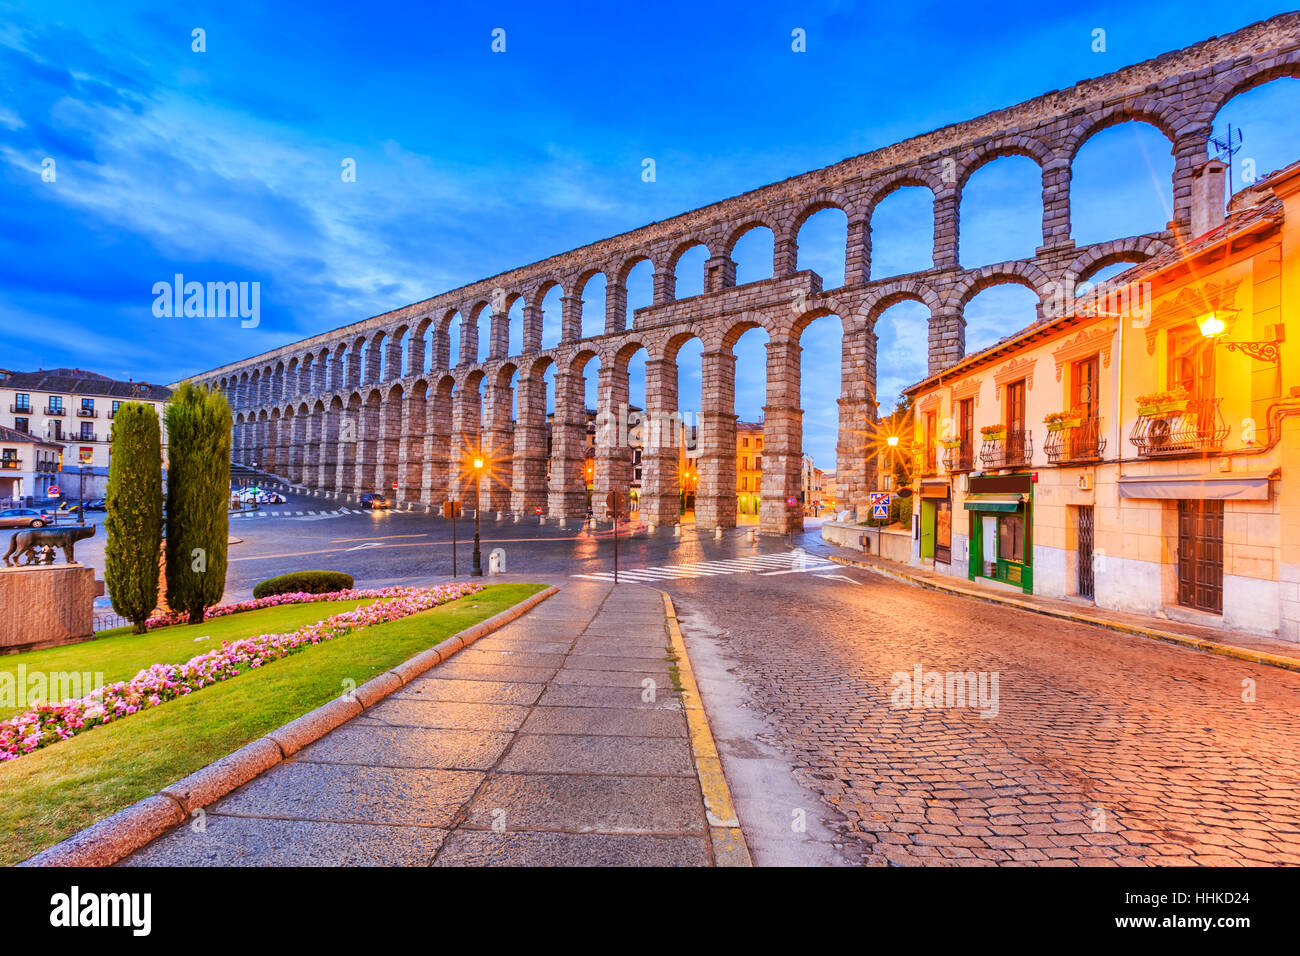 Segovia, España. La Plaza del Azoguejo y el antiguo acueducto romano. Foto de stock